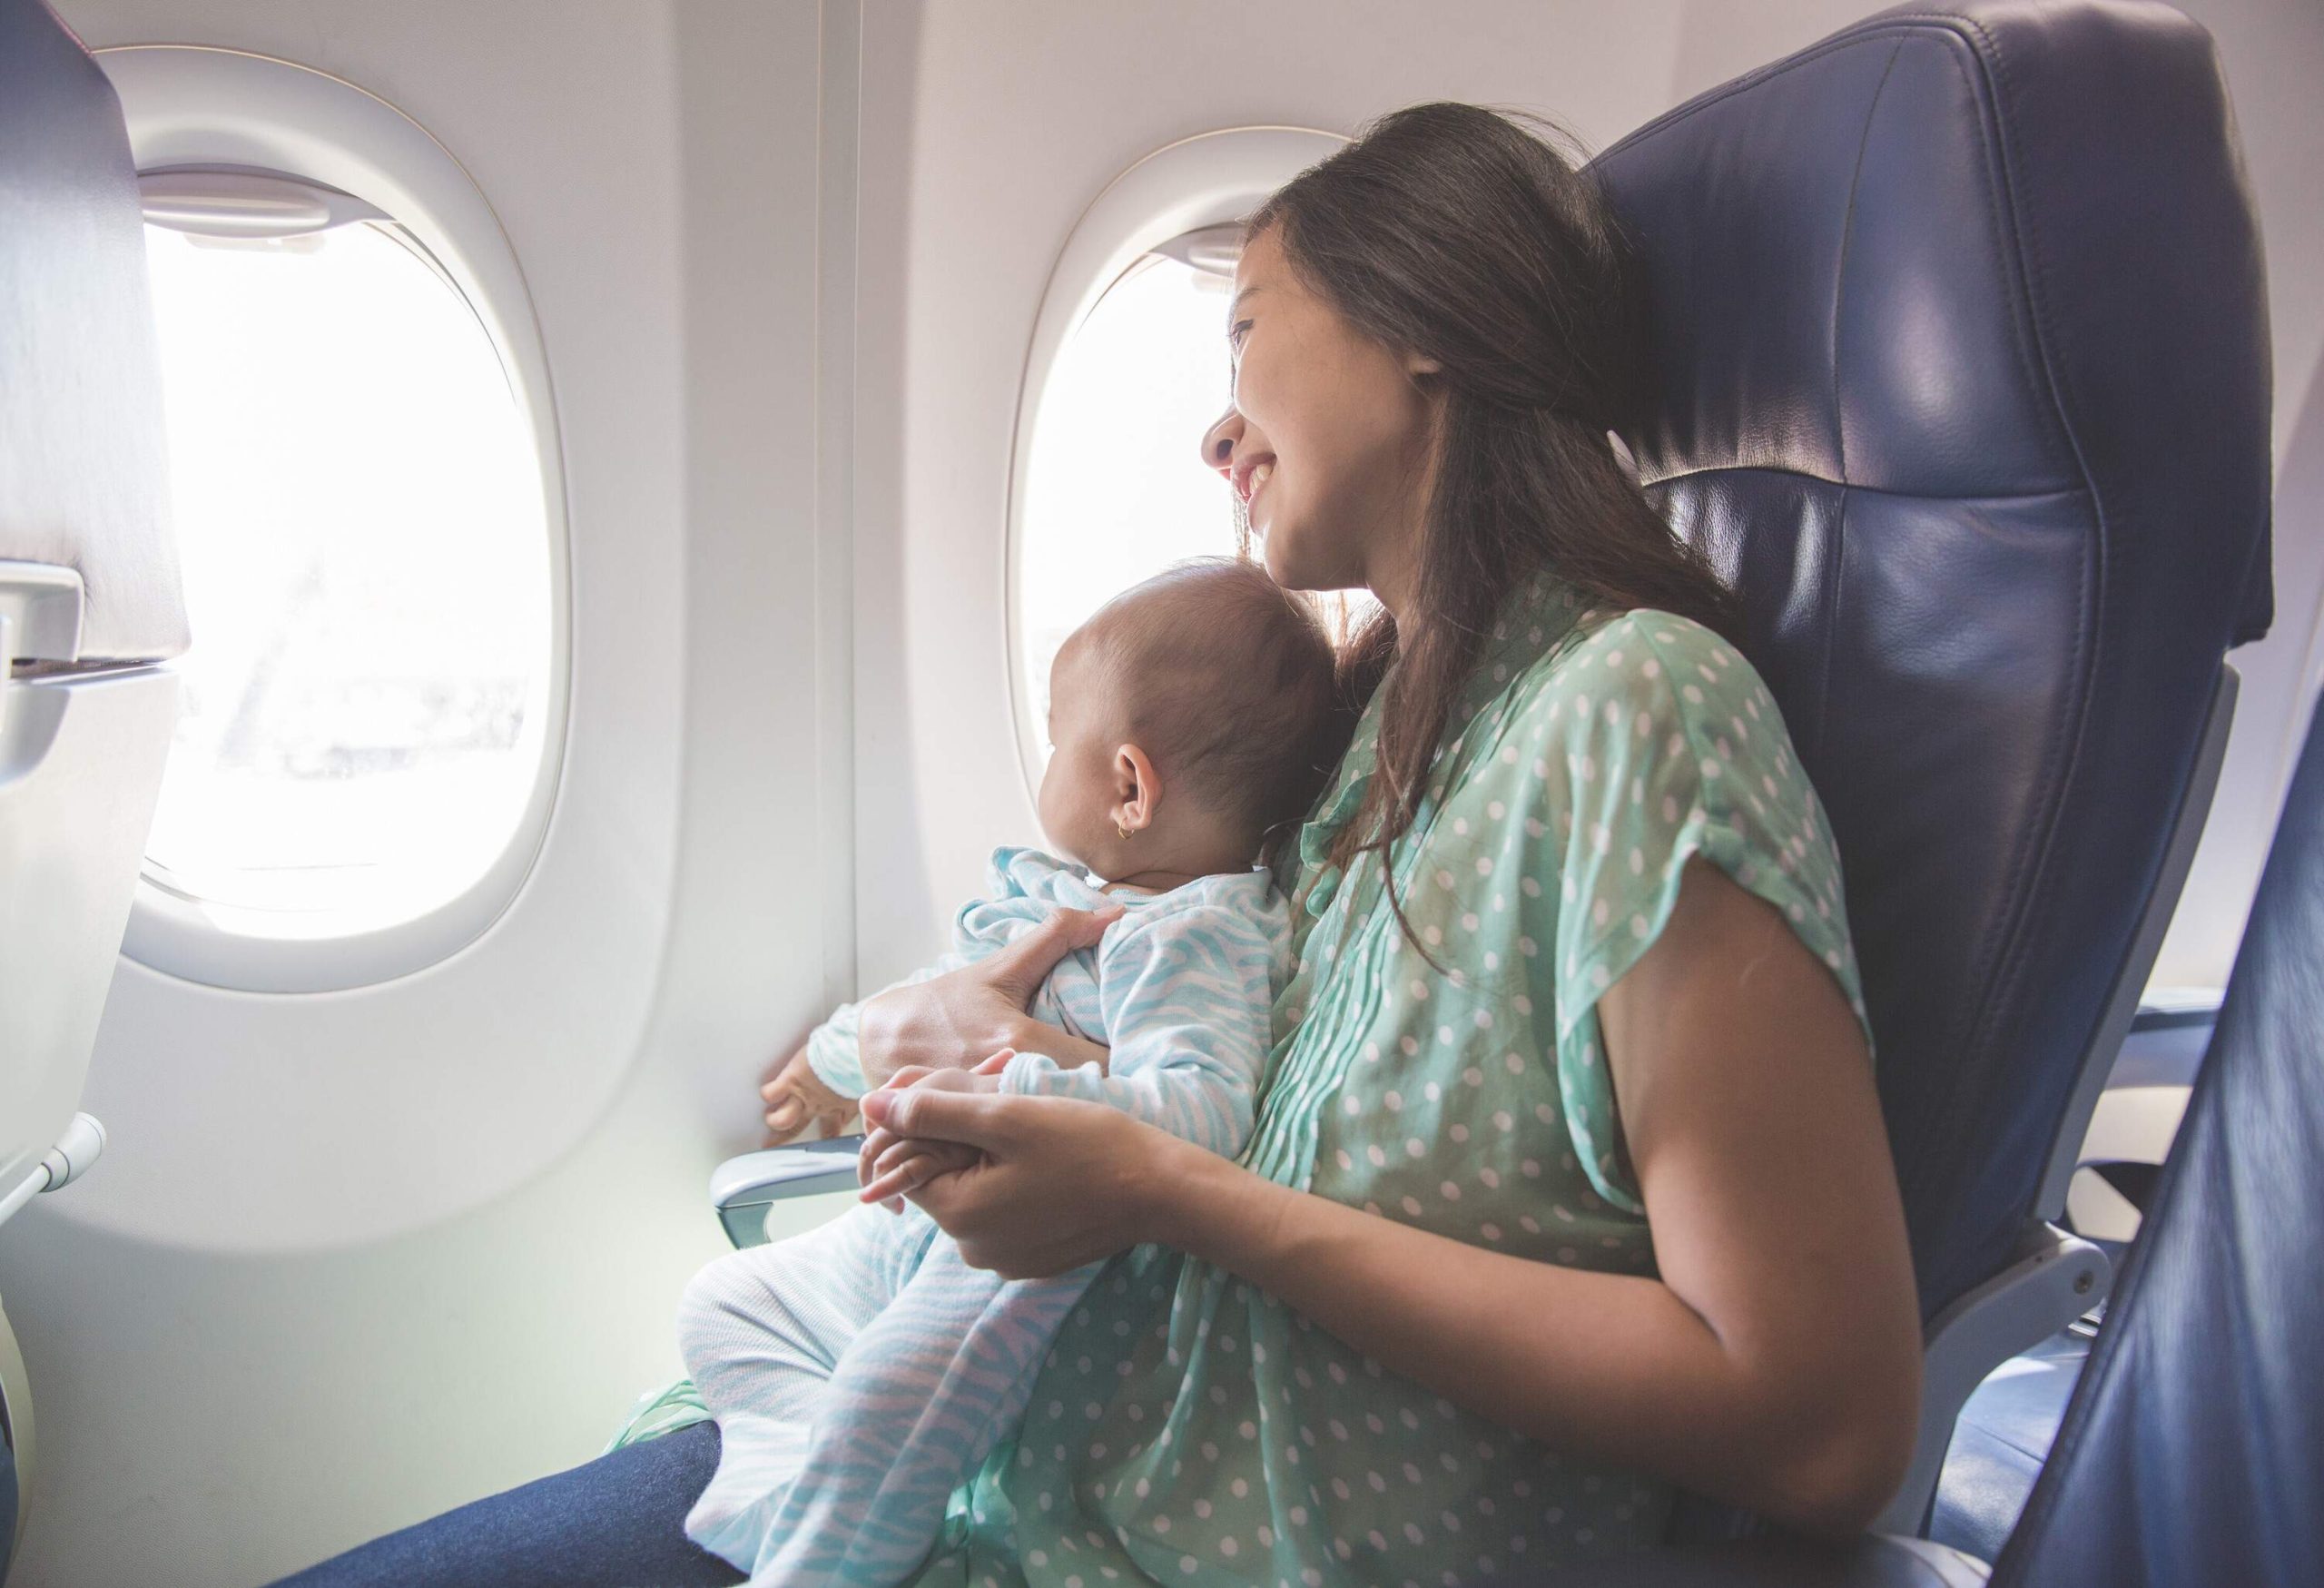 Самолеты для 1 ребенка. Самолет для детей. Перелет с ребенком. Путешествие на самолете для детей. Мама с ребенком в самолете.